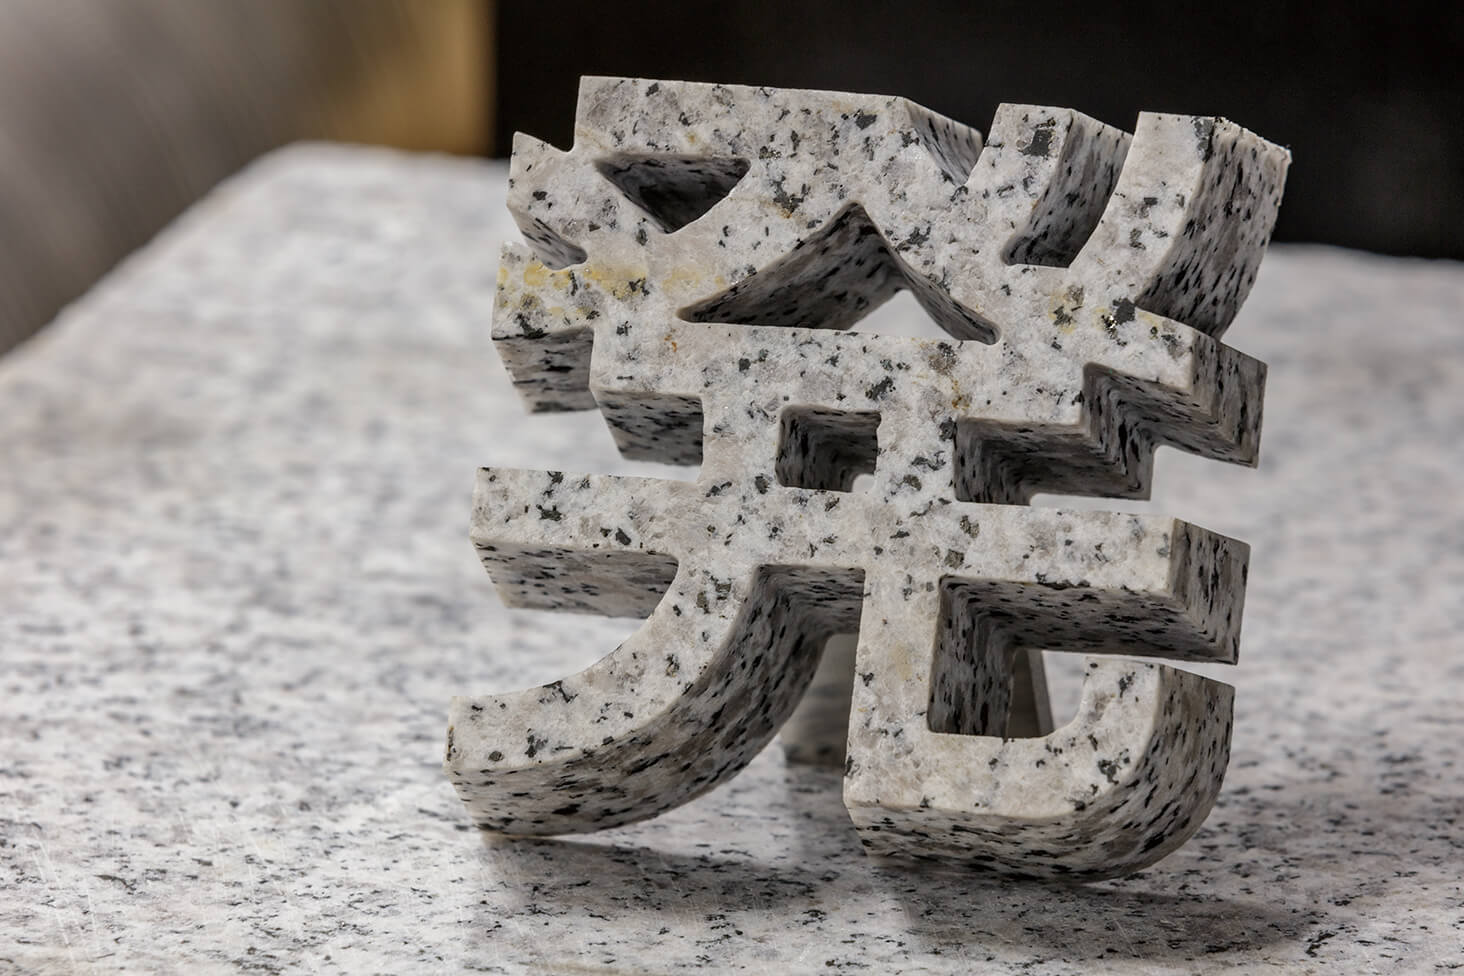 水圧カットにより石を3D加工した「パリストーン」。テーパー加工が可能で、高級感のある立体形状のサインをつくることができる